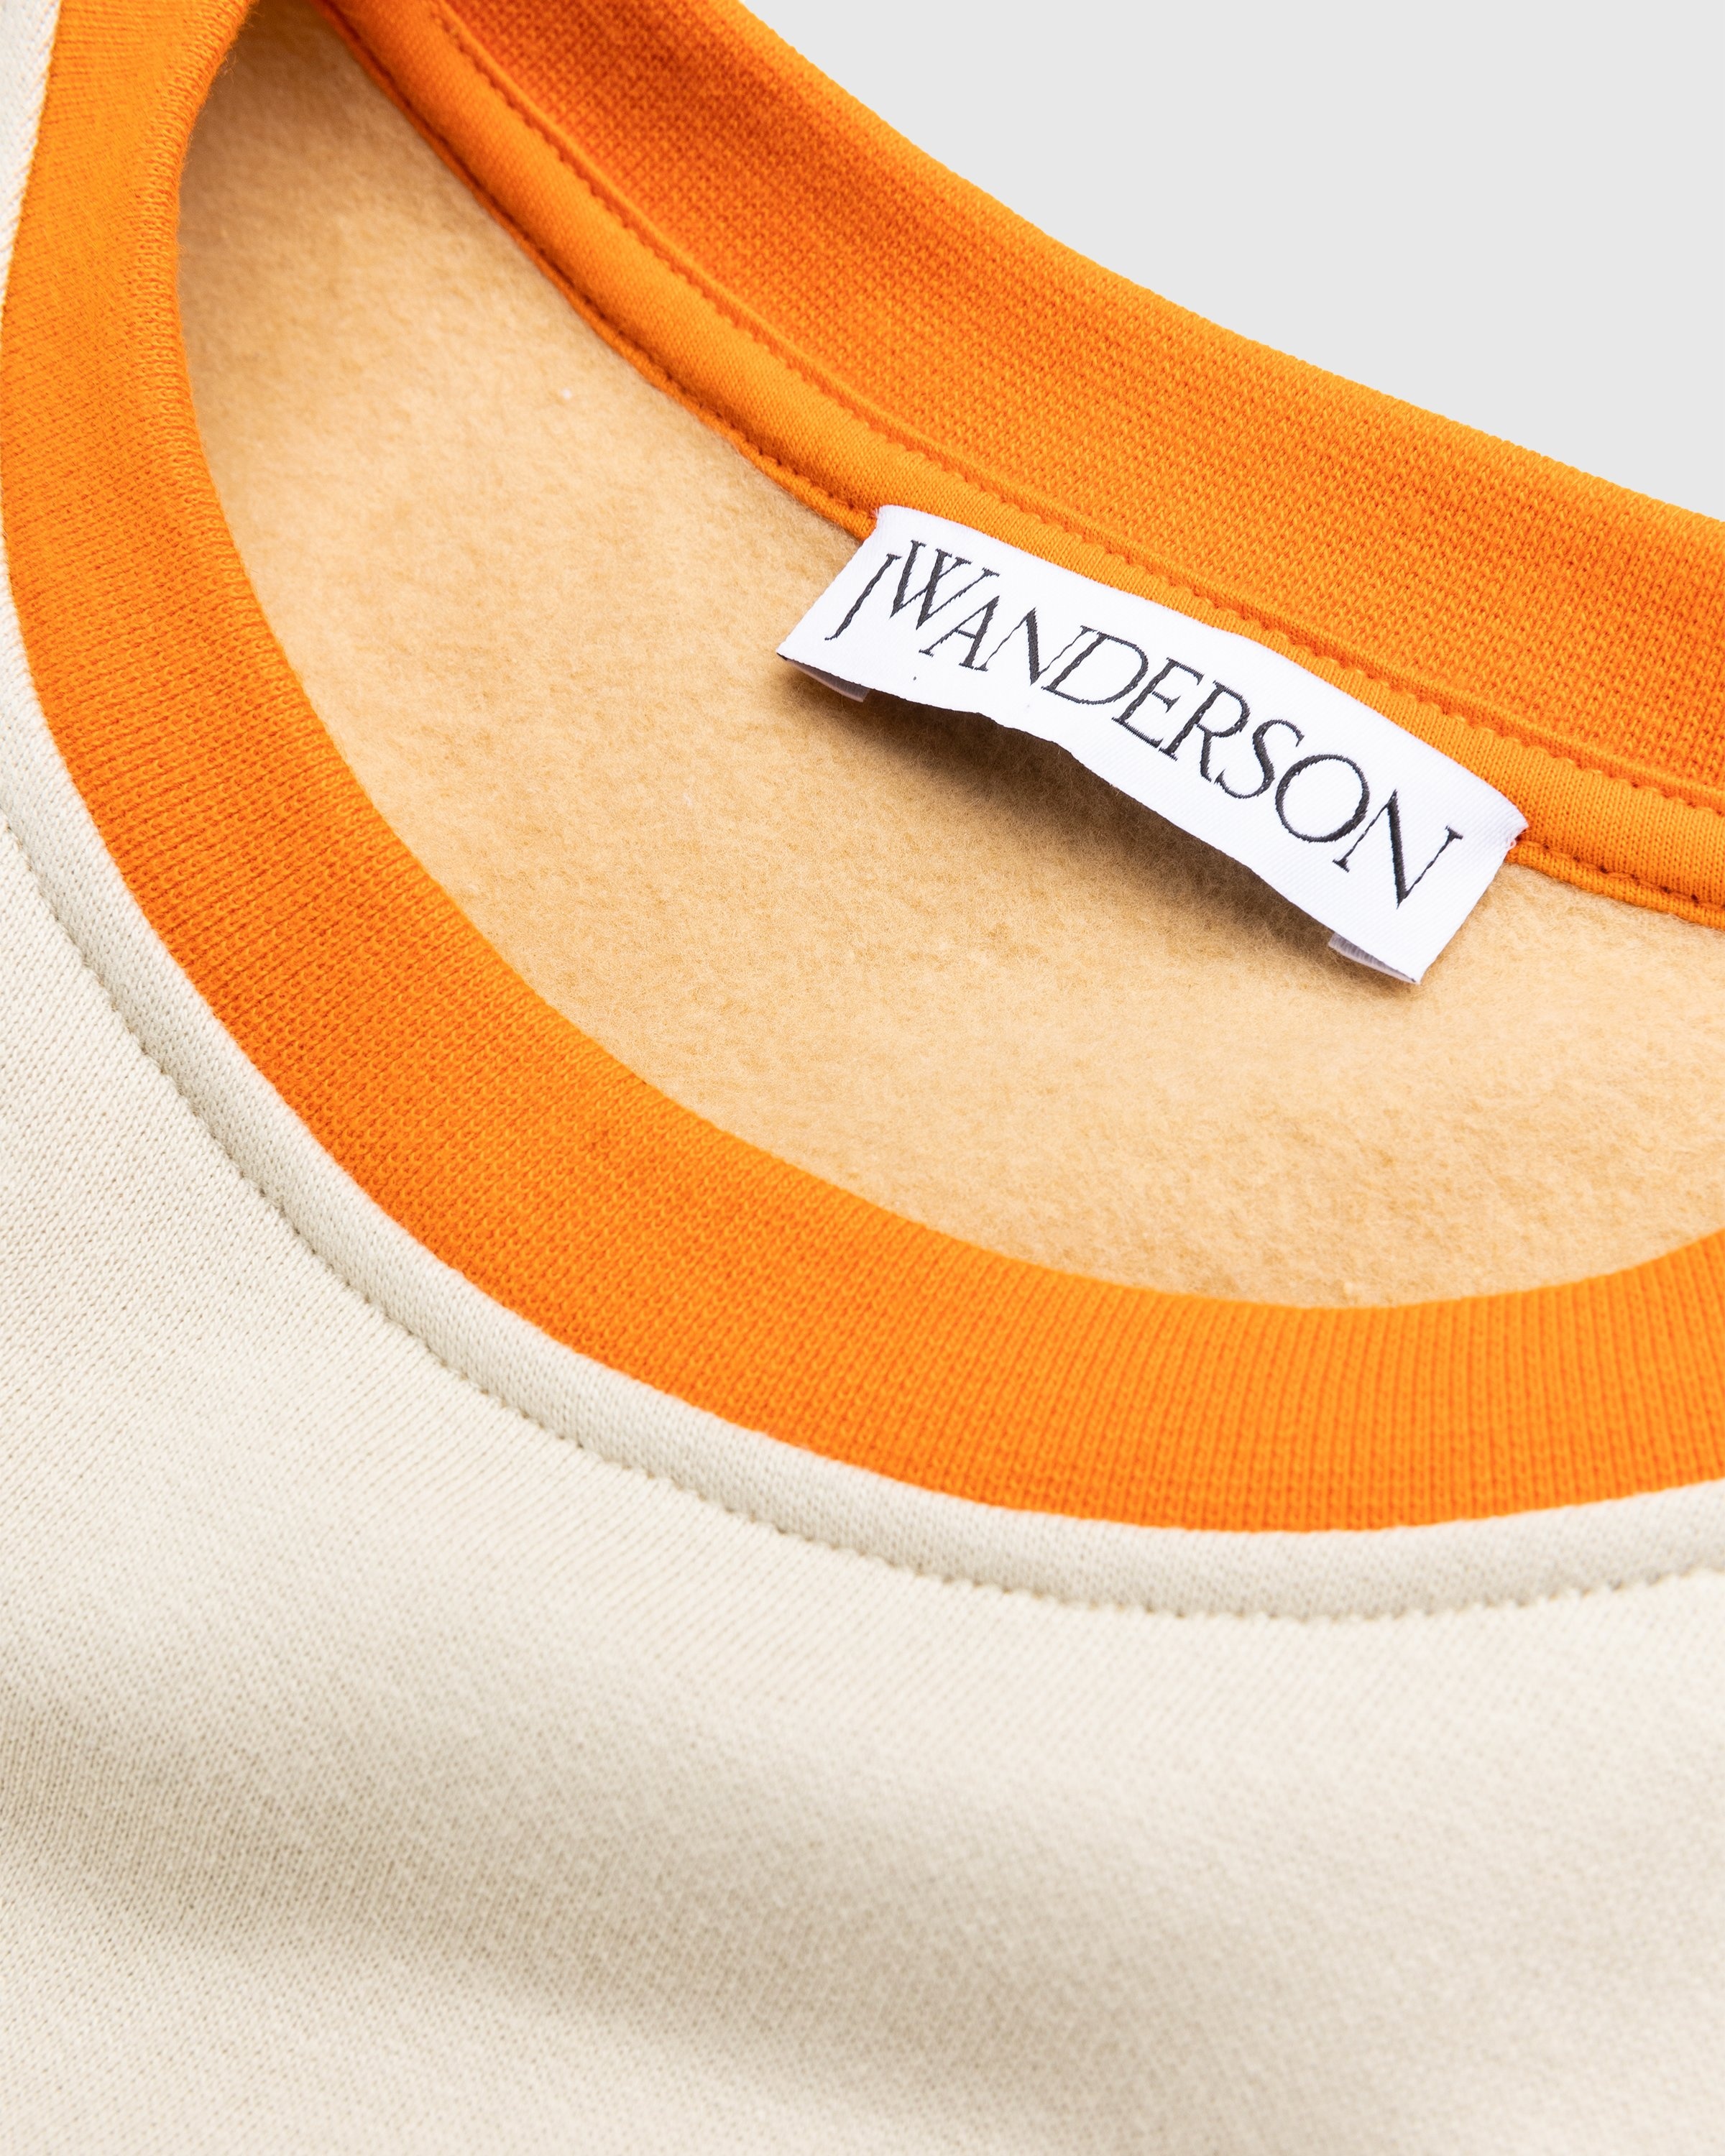 J.W. Anderson – Color Block Sweatshirt Beige - Knitwear - Beige - Image 6